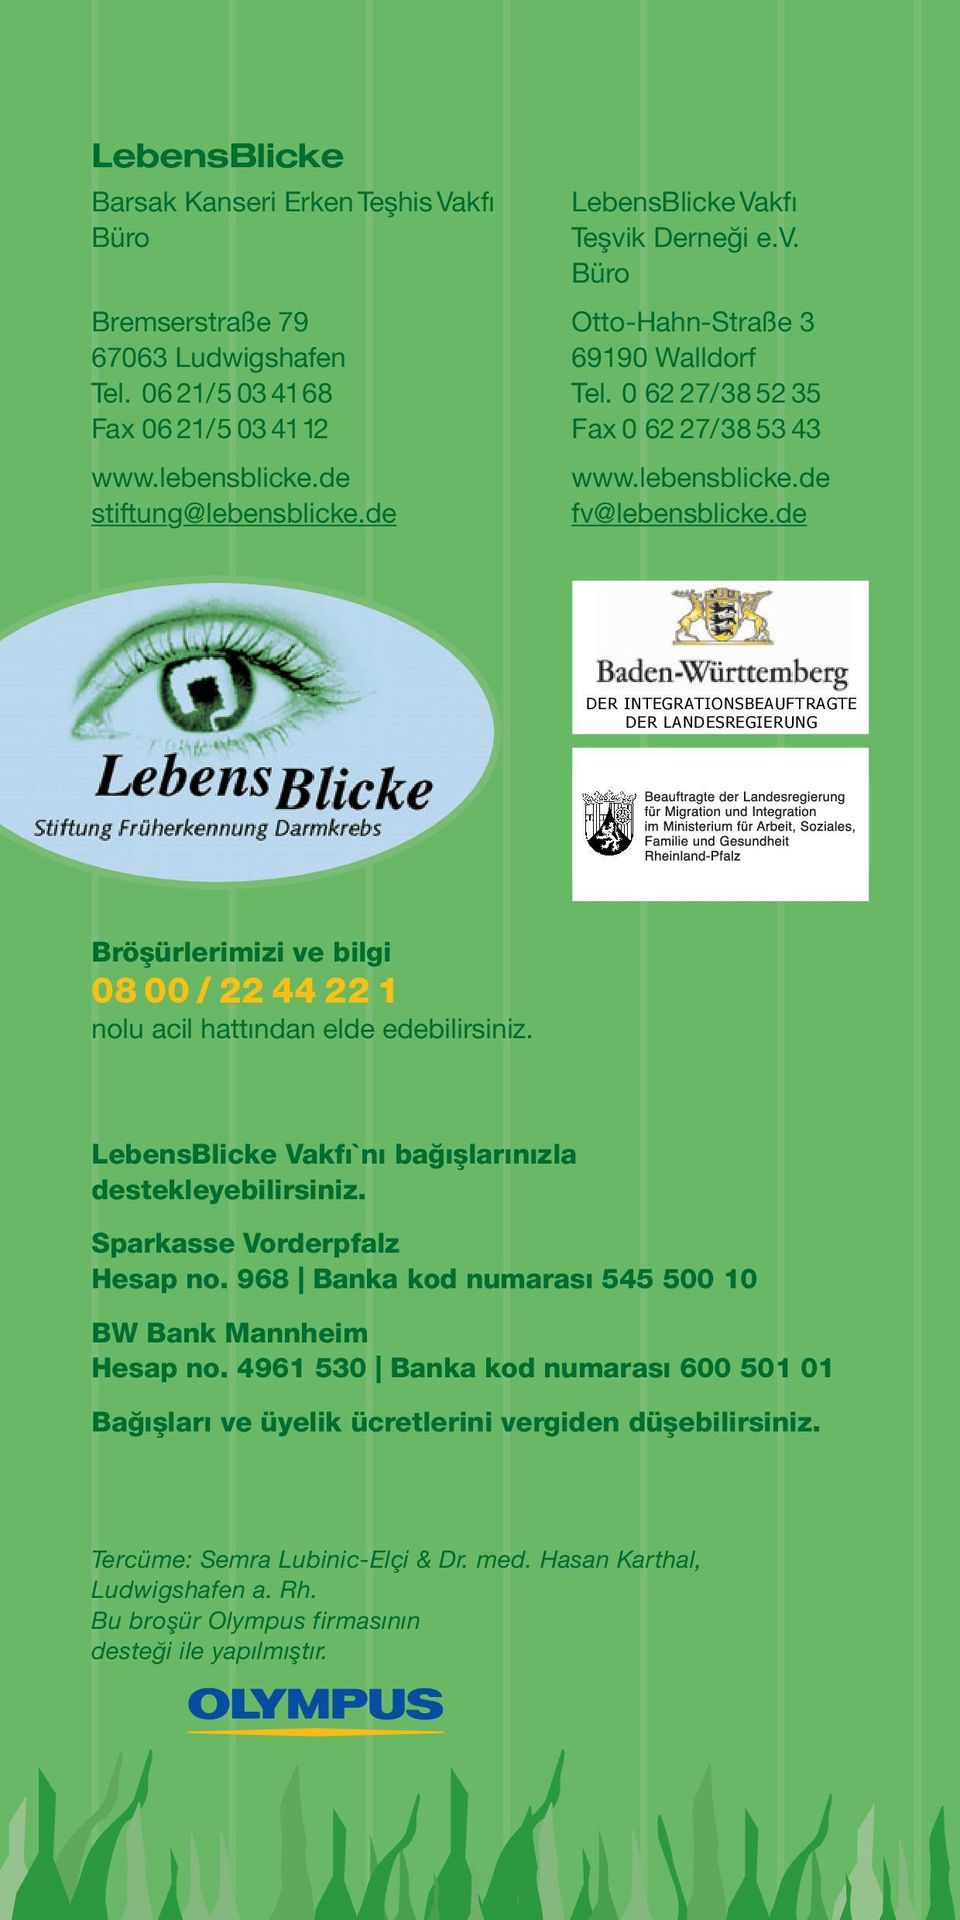 de Bröşürlerimizi ve bilgi 0800/2244221 nolu acil hattından elde edebilirsiniz. LebensBlicke Vakfı`nı bağışlarınızla destekleyebilirsiniz. Sparkasse Vorderpfalz Hesap no.